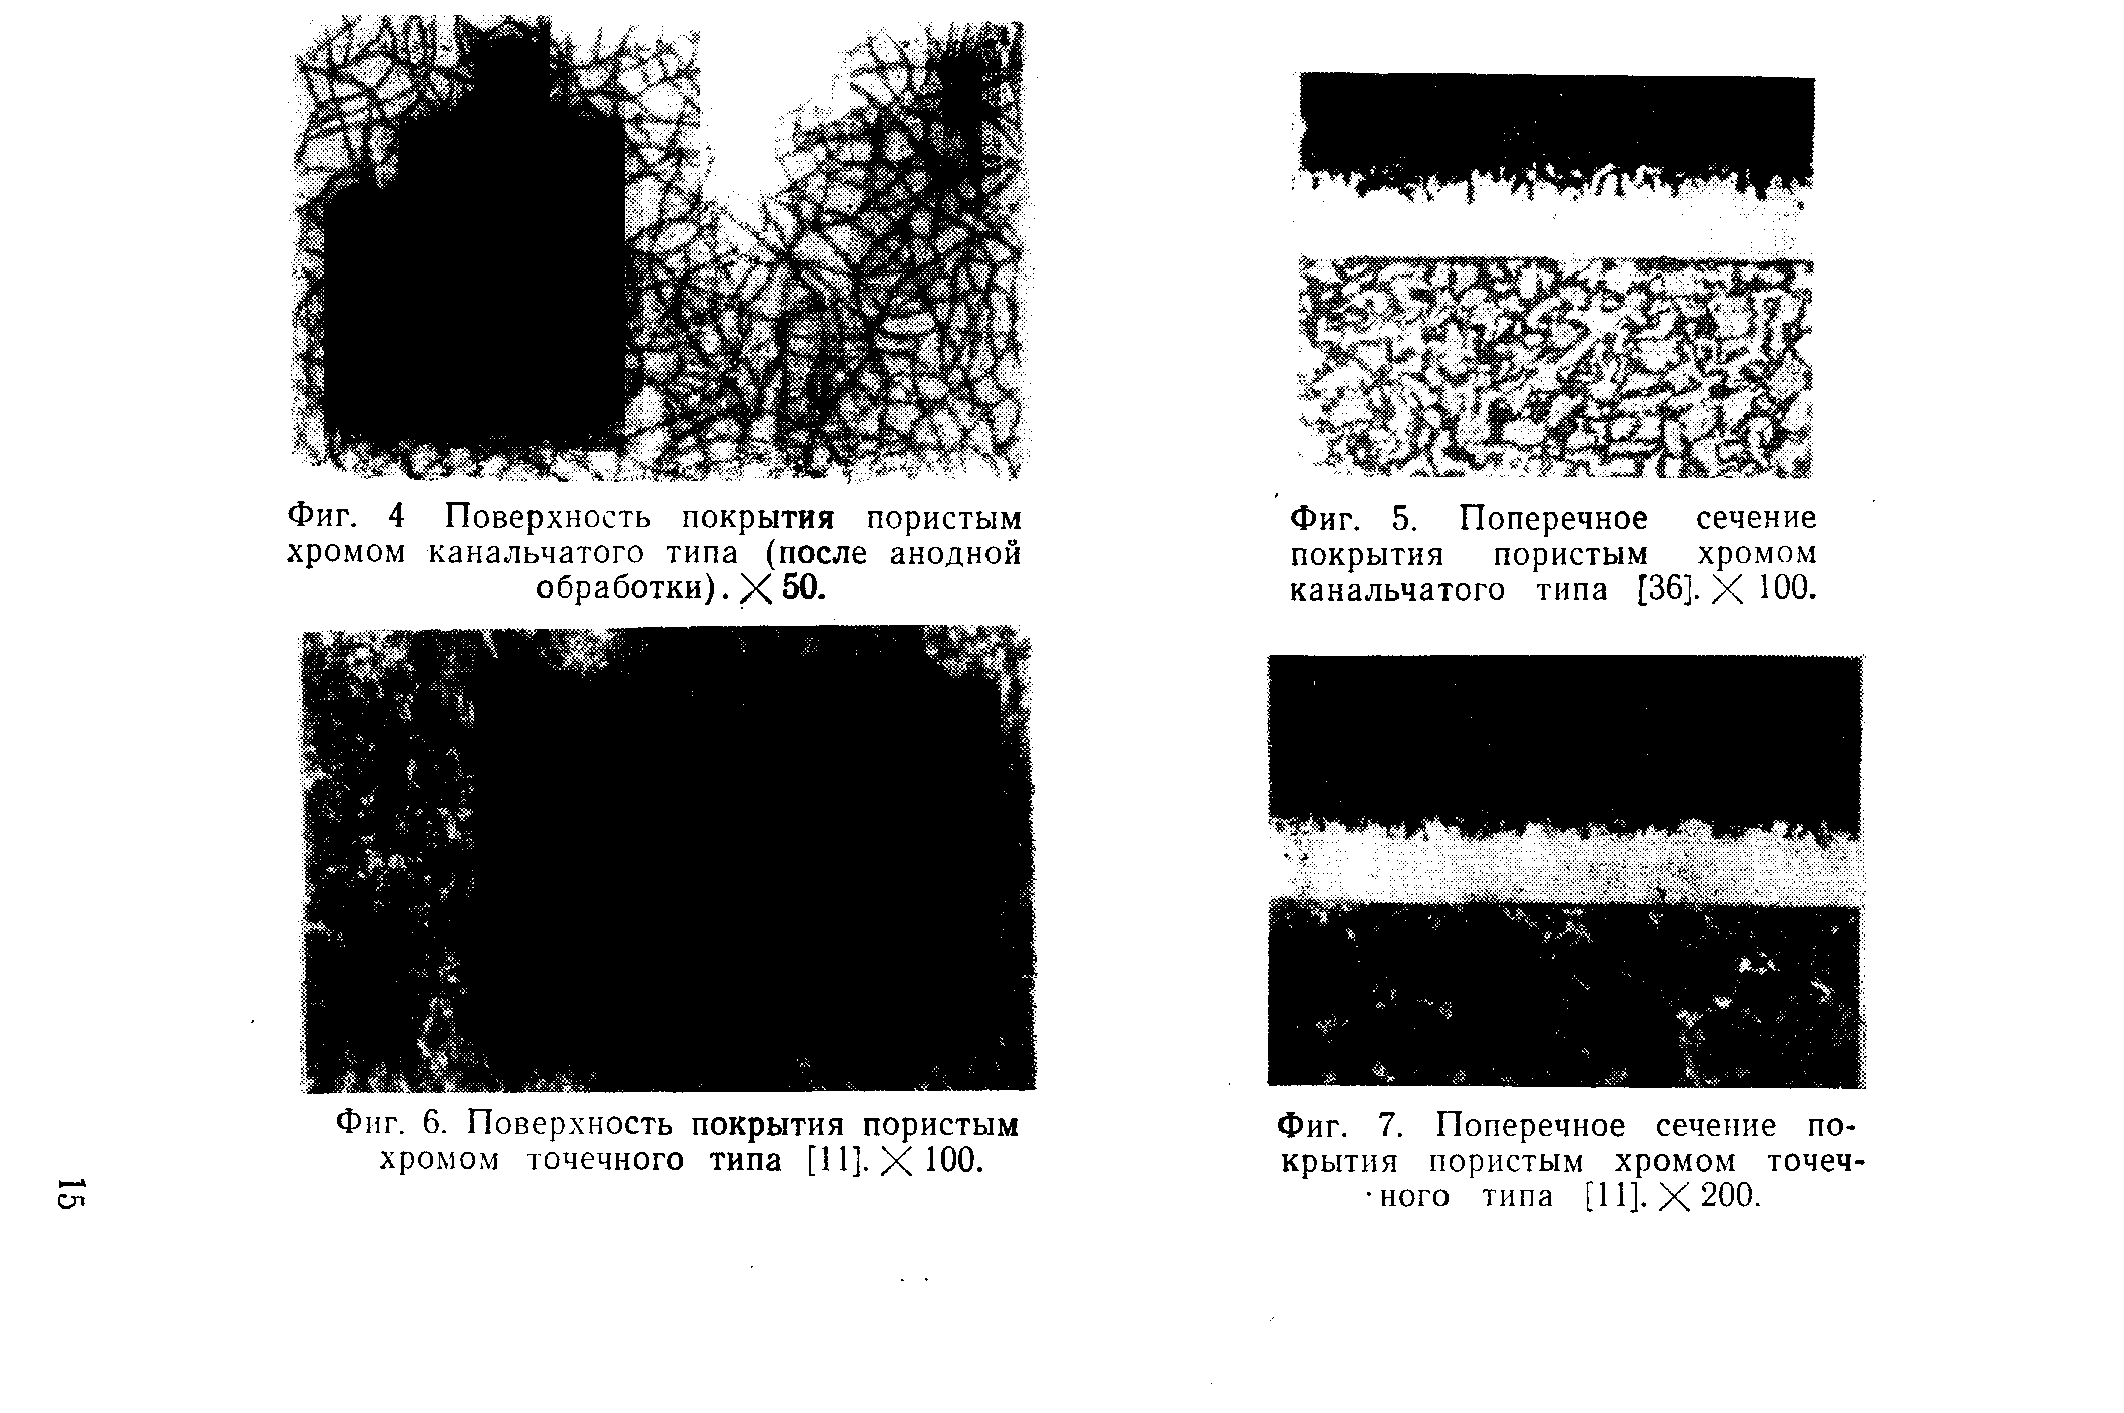 Фиг. 4 Поверхность покрытия пористым хромом канальчатого типа (после анодной обработки). X 50.
